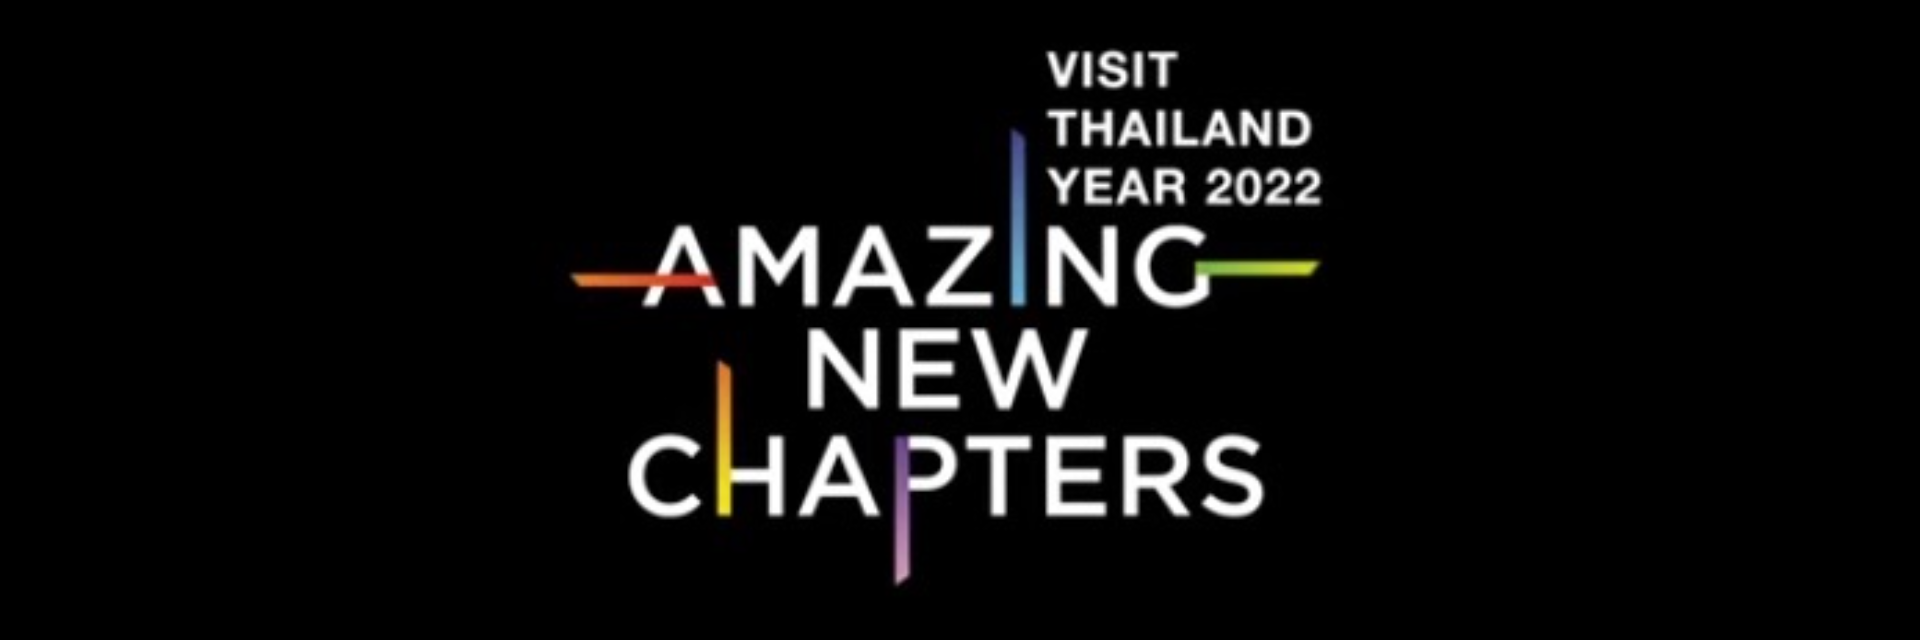 Amazing Thailand, Amazing New Chapters.